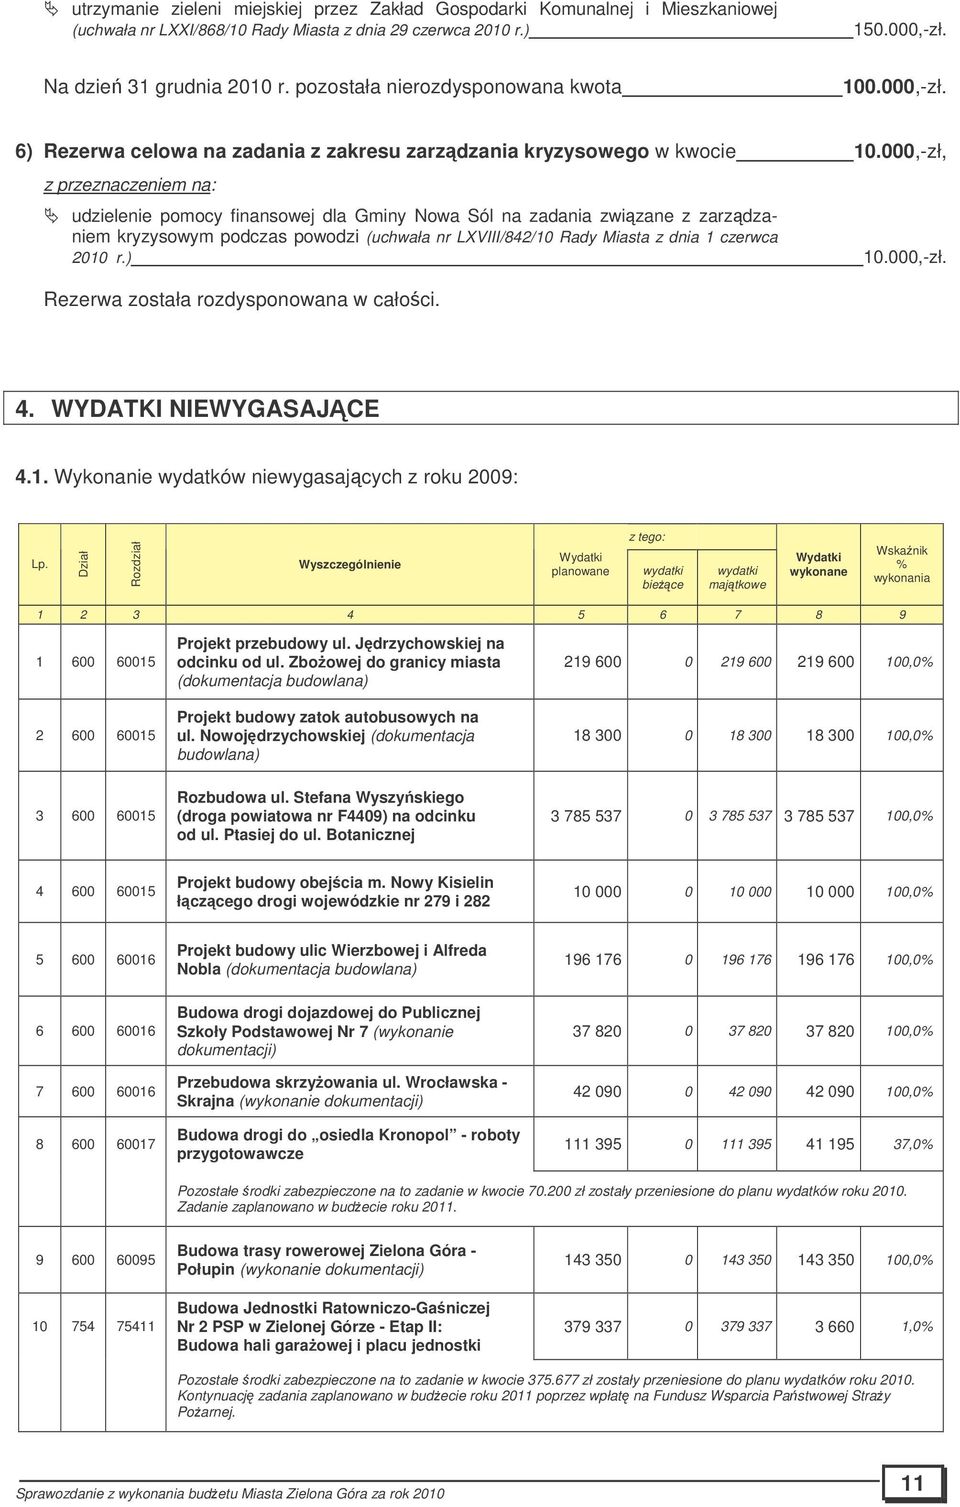 000,-zł, z przeznaczeniem na: udzielenie pomocy finansowej dla Gminy Nowa Sól na zadania zwizane z zarzdzaniem kryzysowym podczas powodzi (uchwała nr LXVIII/842/10 Rady Miasta z dnia 1 czerwca 2010 r.